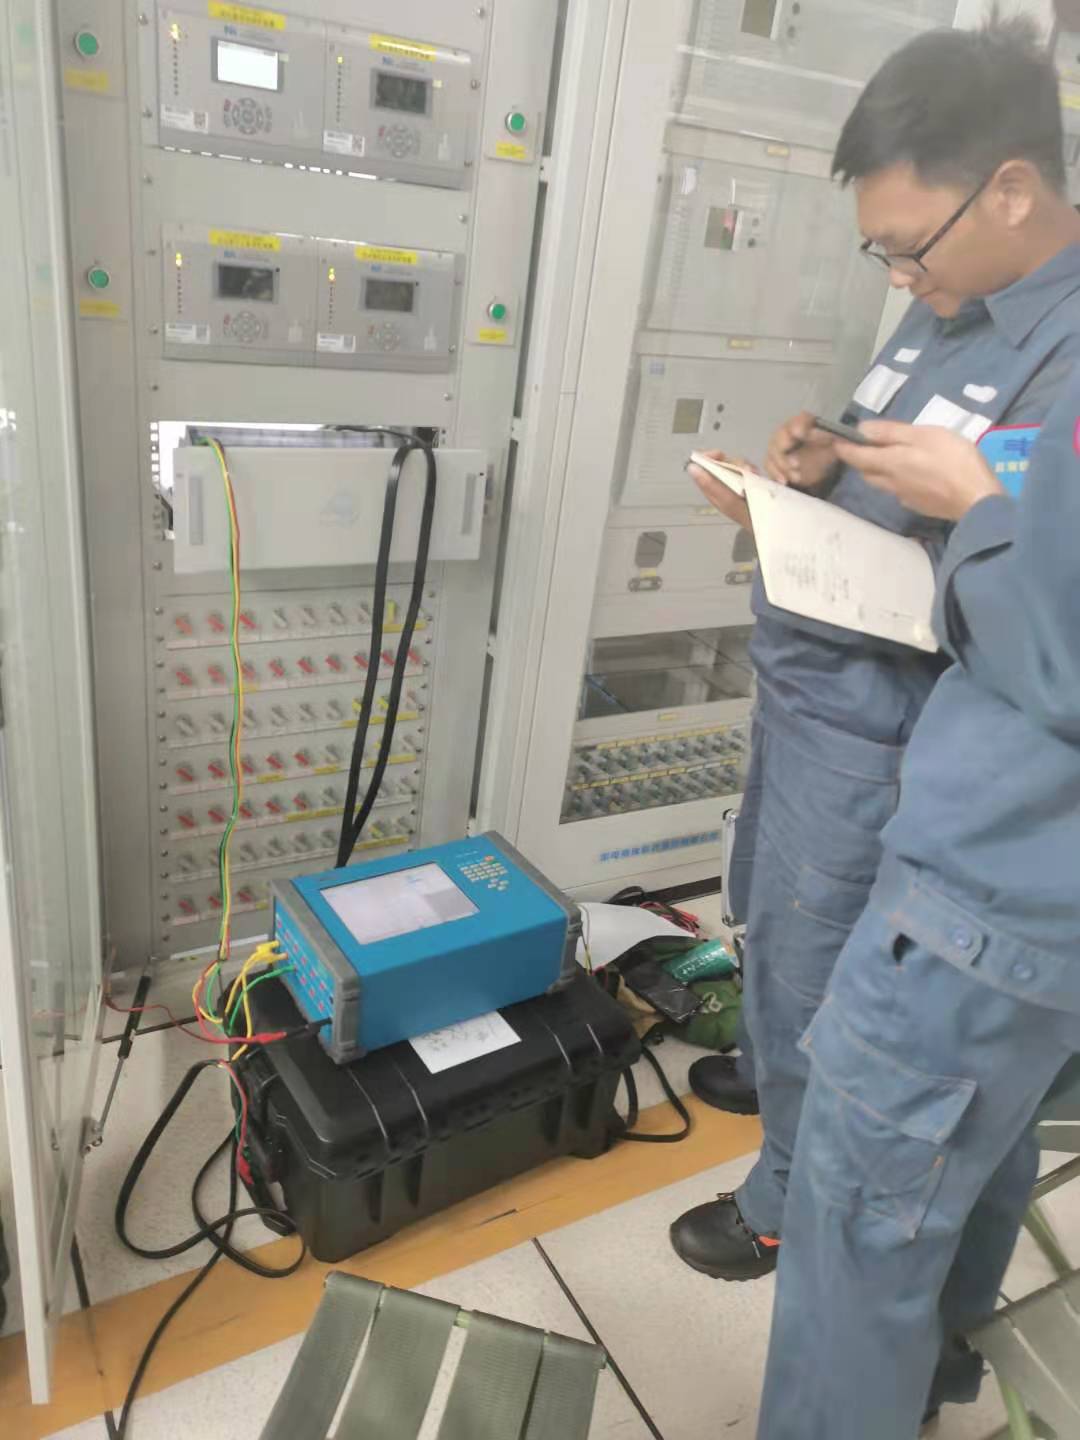 KF86 ha sido elegida como única herramienta de prueba y puesta en marcha por CSG en la provincia de Yunnan